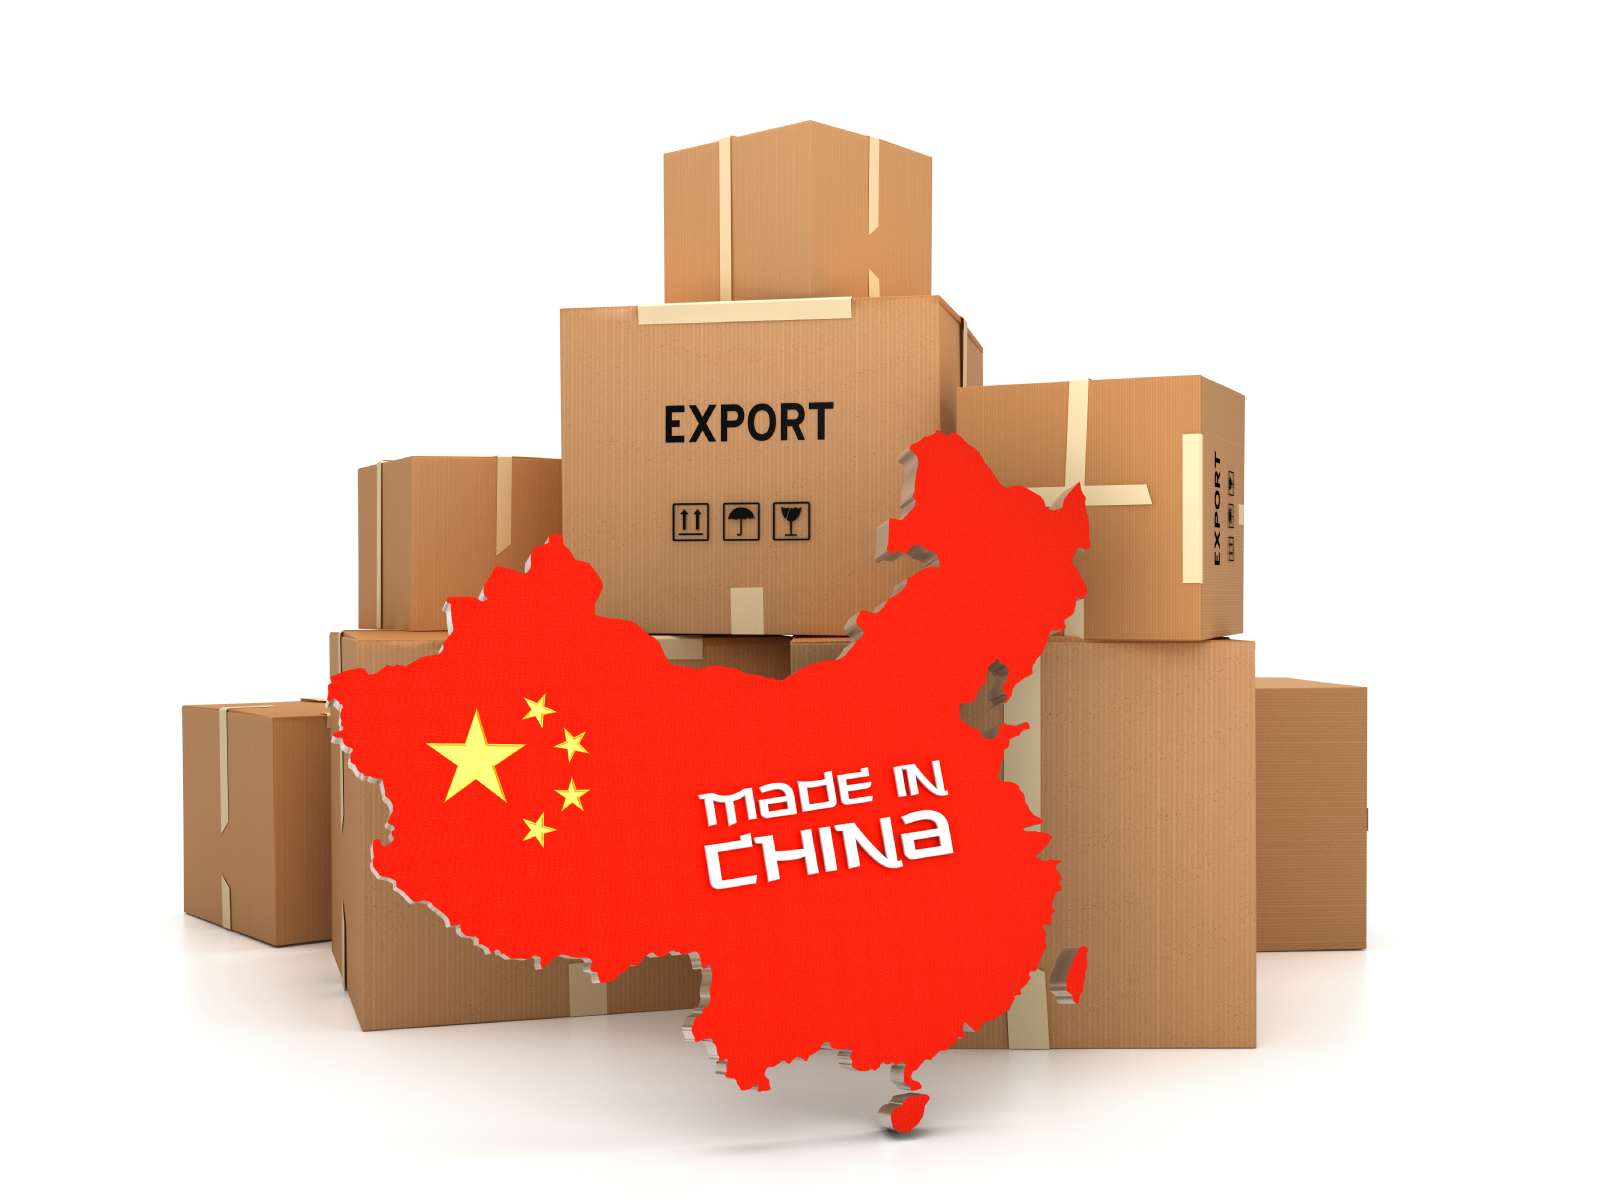 O import. Товары из Китая. Экспорт товаров из Китая. Импорт из Китая. Поставка товаров из Китая.